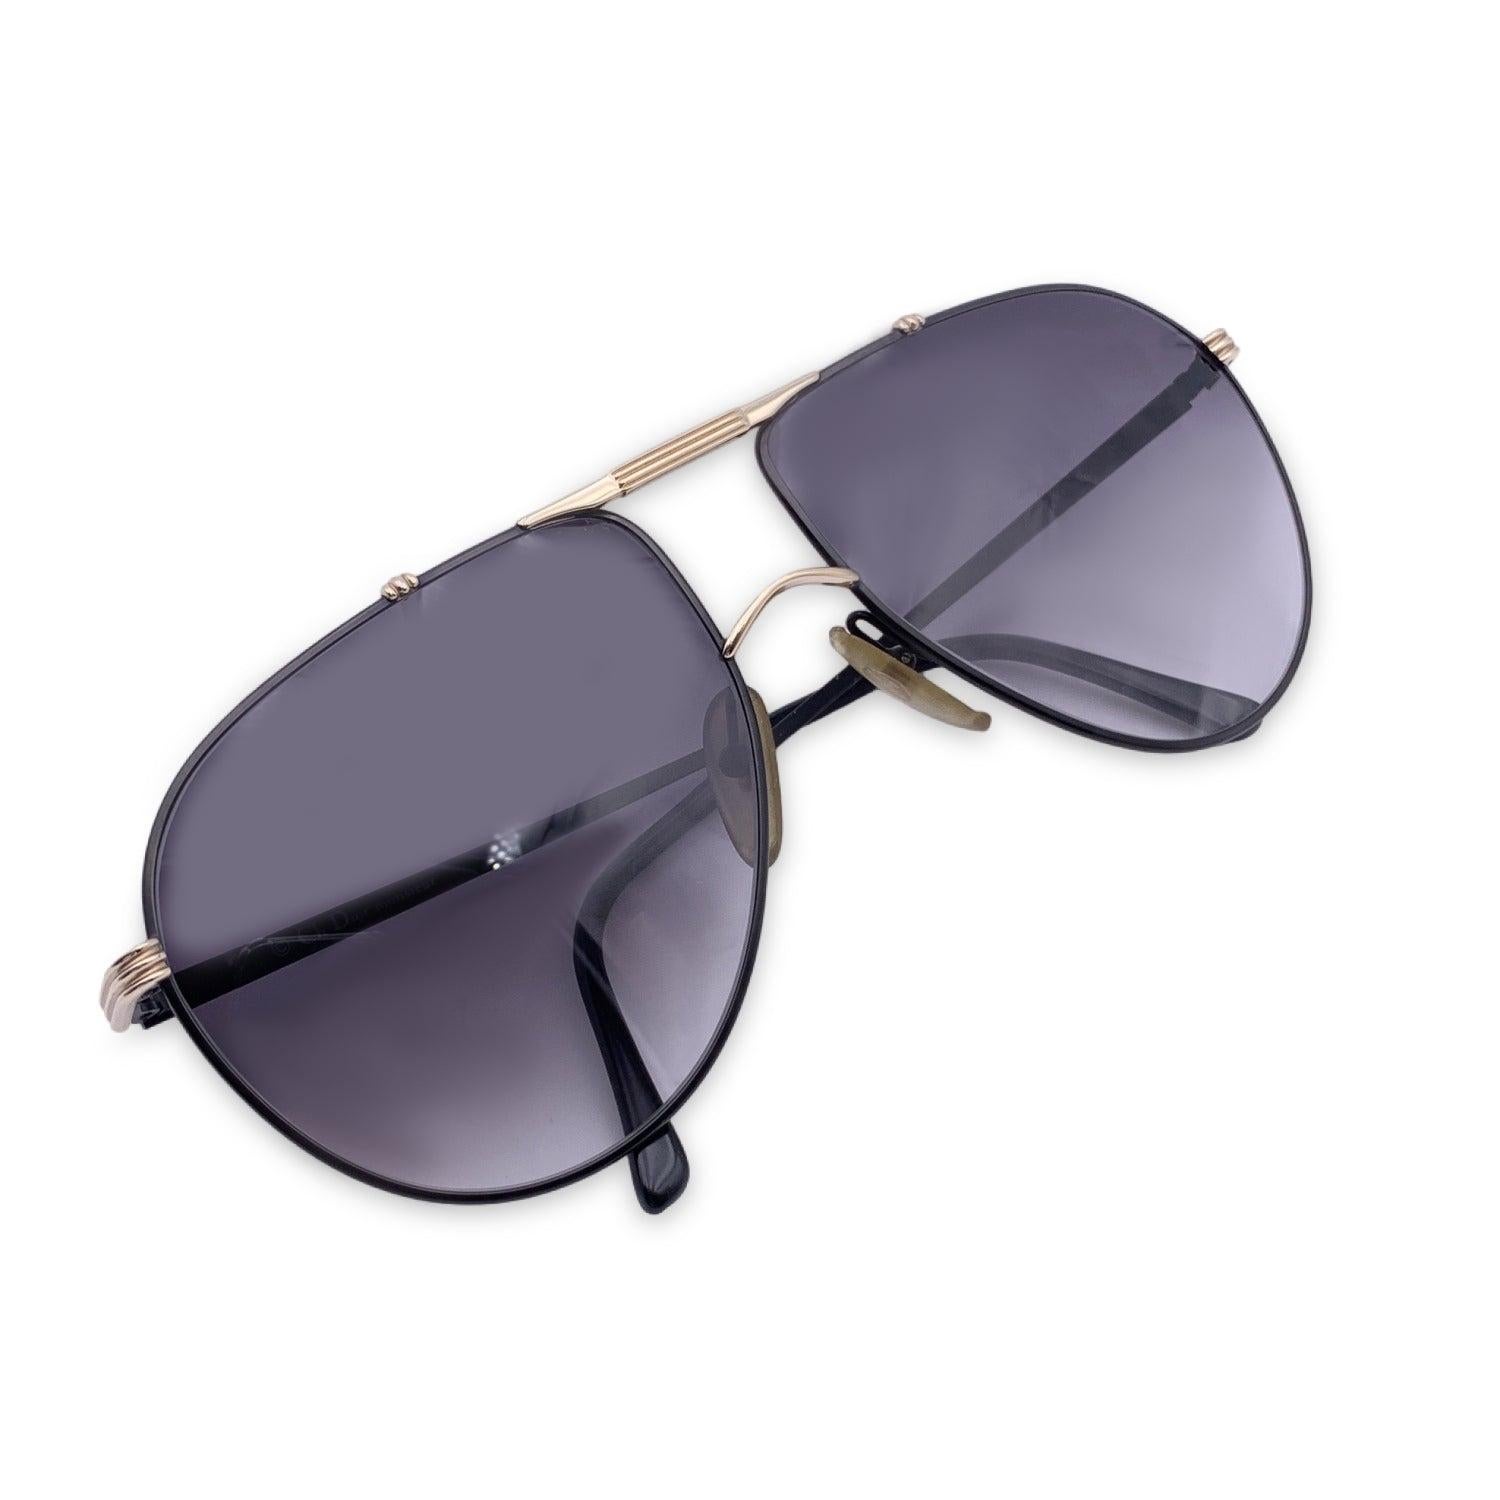 Vintage Christian Dior Monsieur Unisex Sunglasses, 2248 Black. Size: 65/20 135mm. Black metal frame, with CD logo on temples. 100% Total UVA/UVB protection. Grey gradient lenses. Details MATERIAL: Metal COLOR: Black MODEL: 2248 GENDER: Unisex Adults